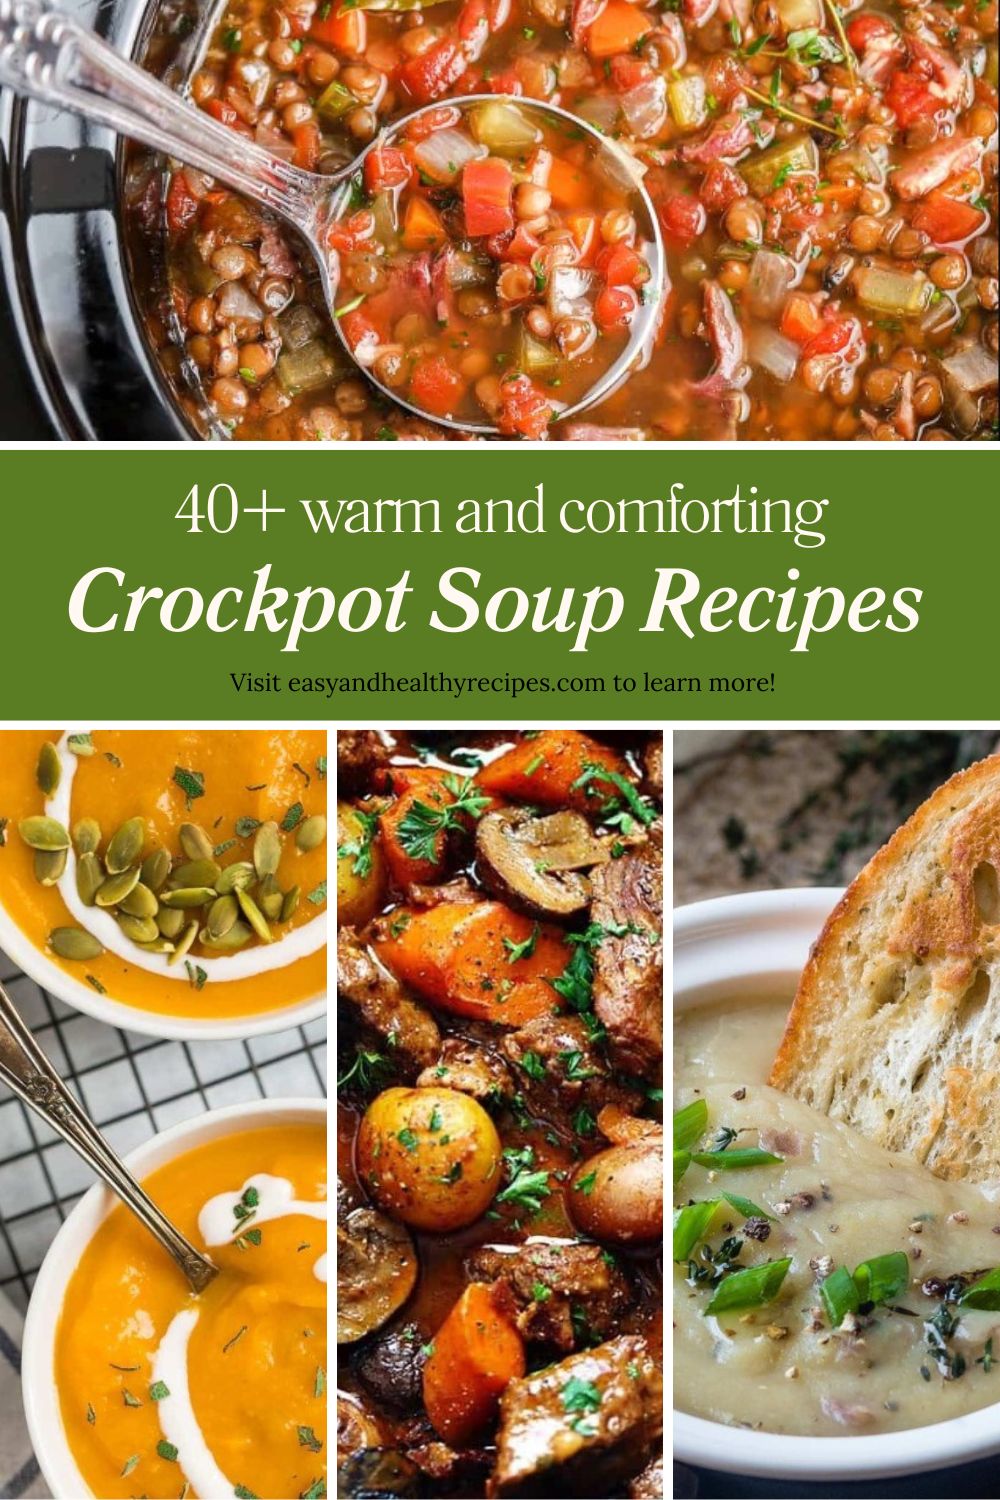 Crockpot Soup